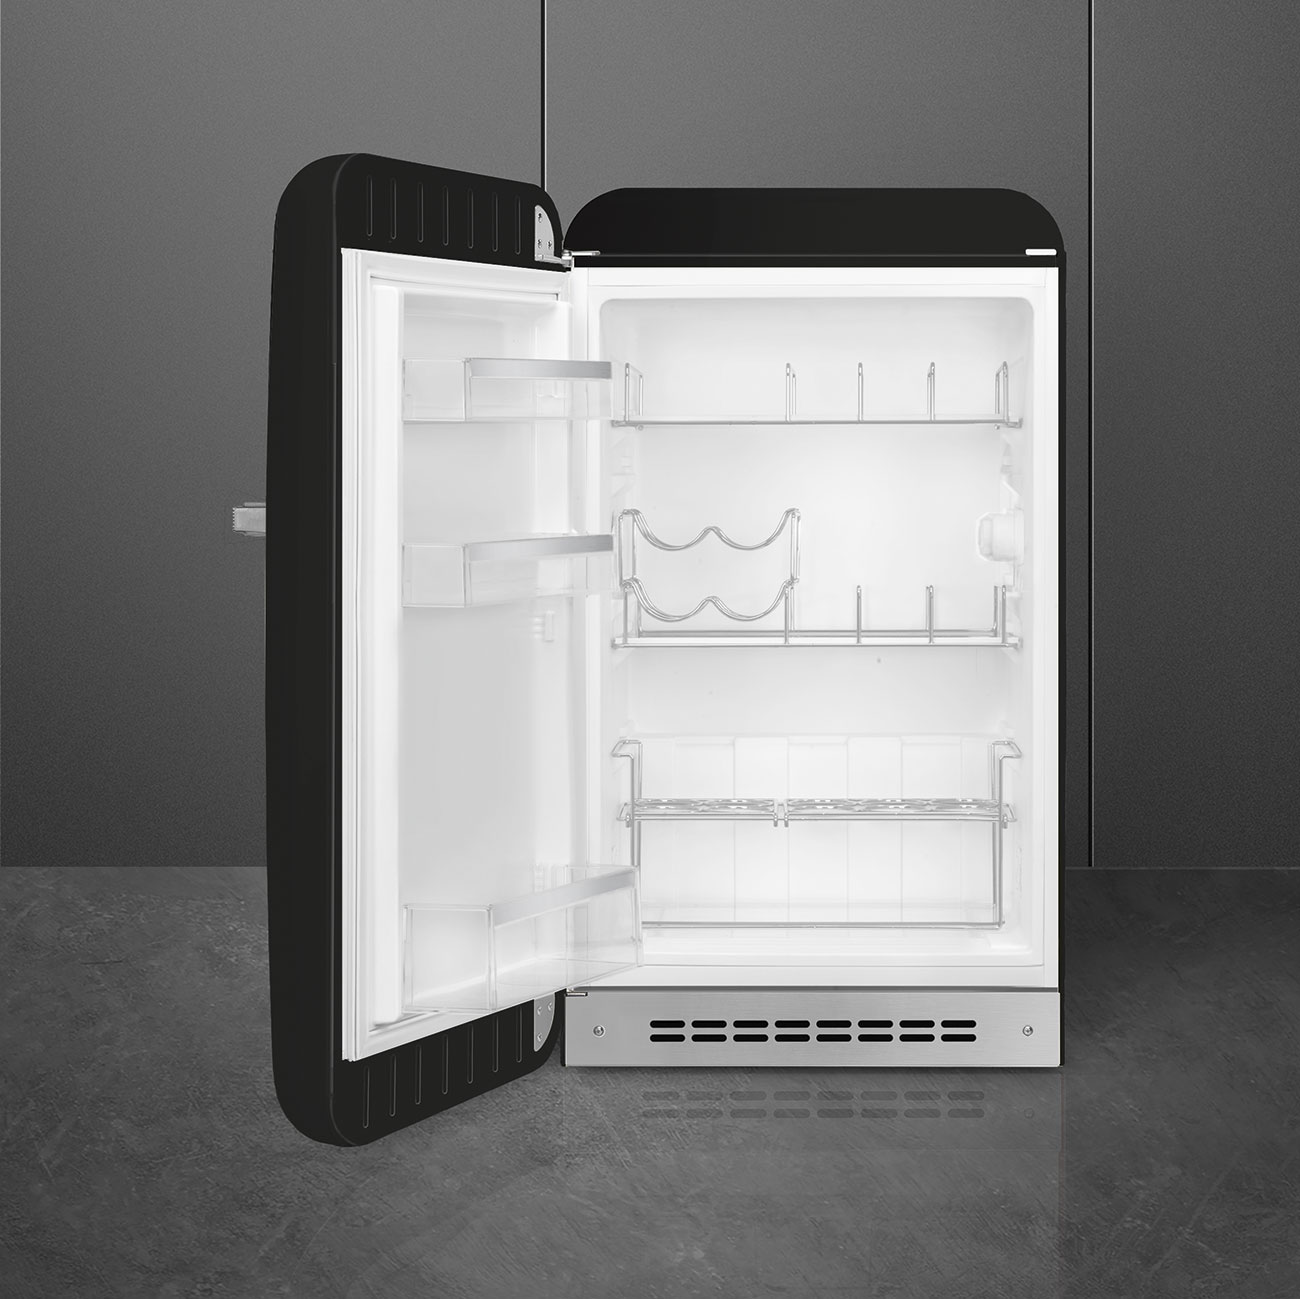 Black refrigerator - Smeg_2